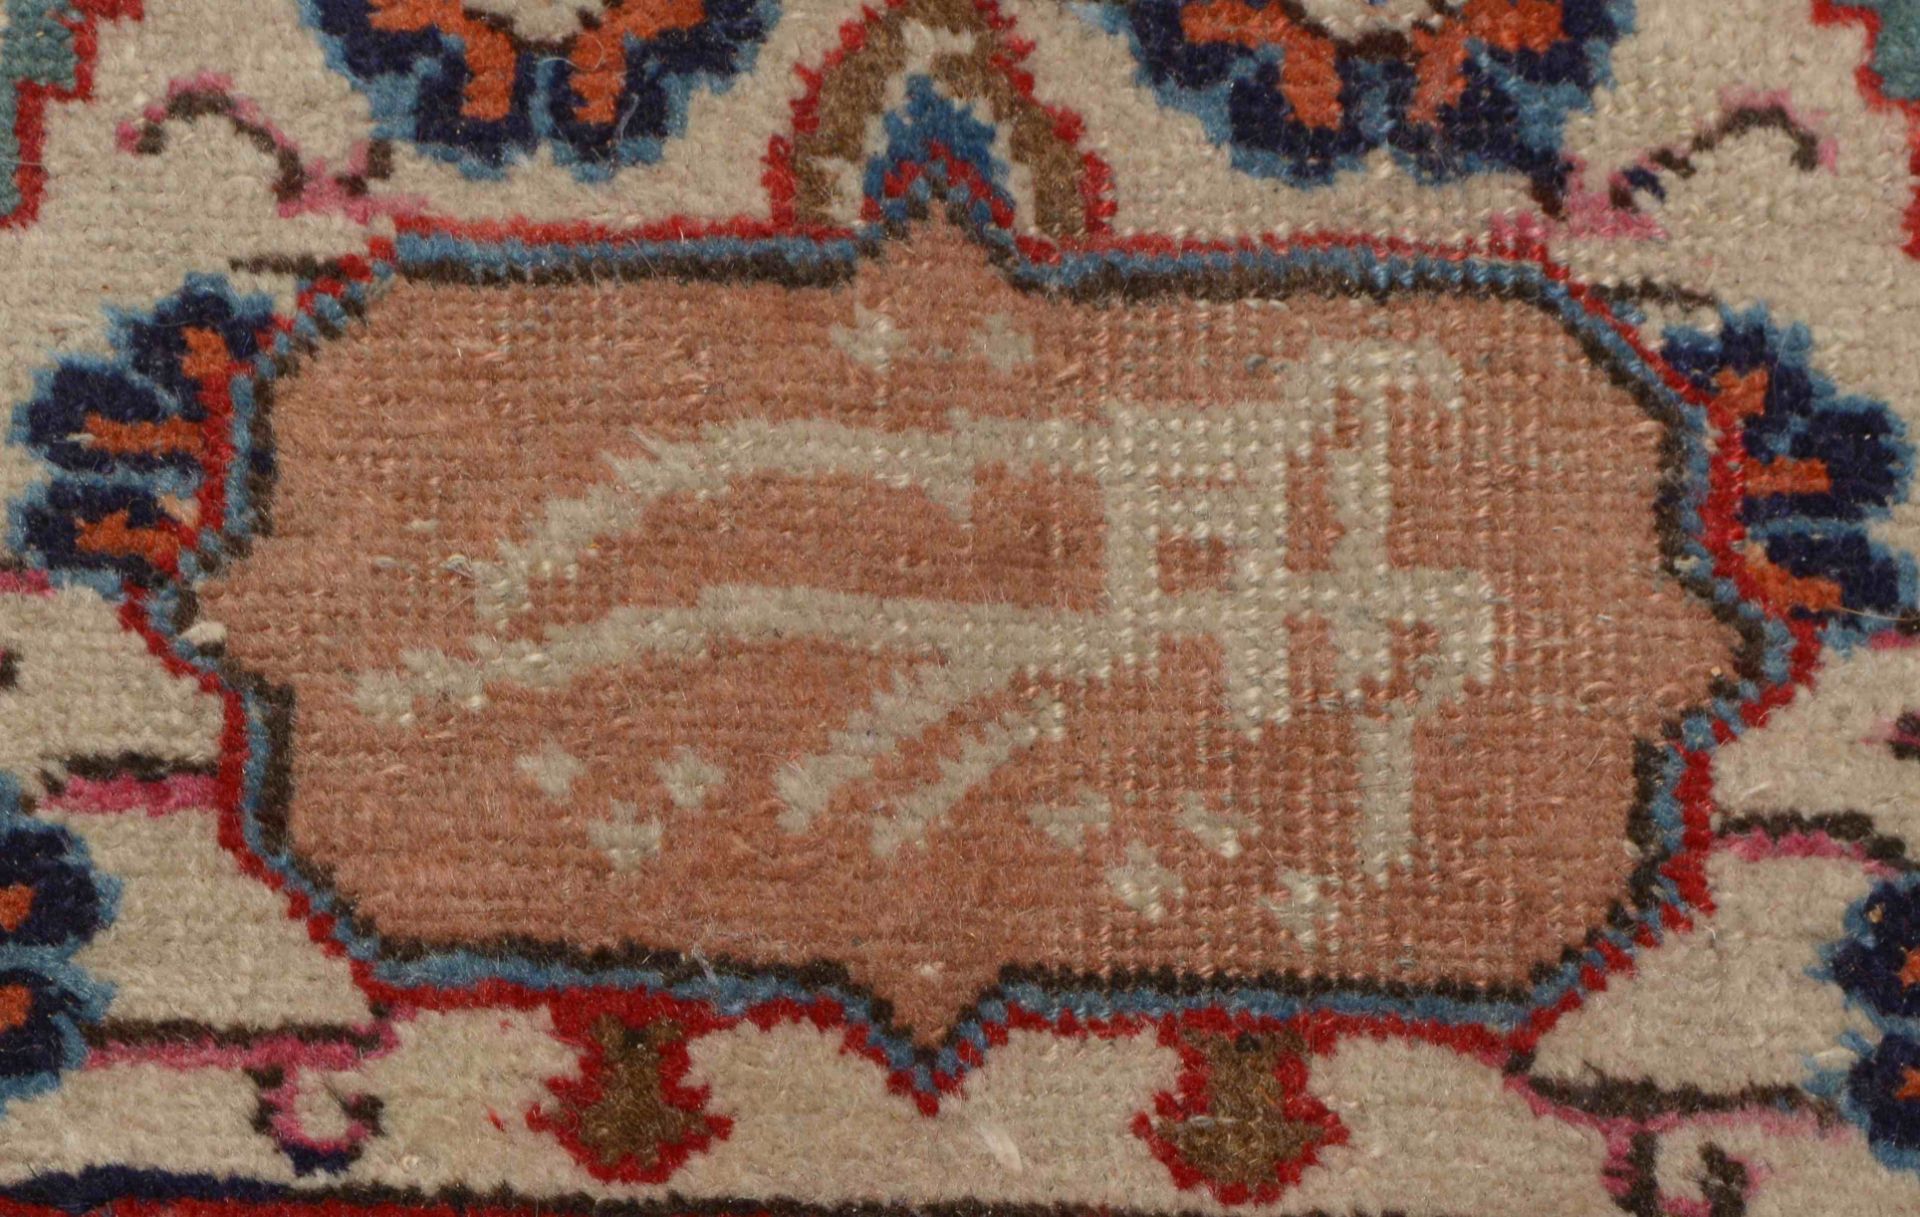 Mesched, älter, feste Knüpfung, hellgrundig, mit bekannter Mesched-Signatur; Maße 362 x 258 cm (stel - Bild 3 aus 3